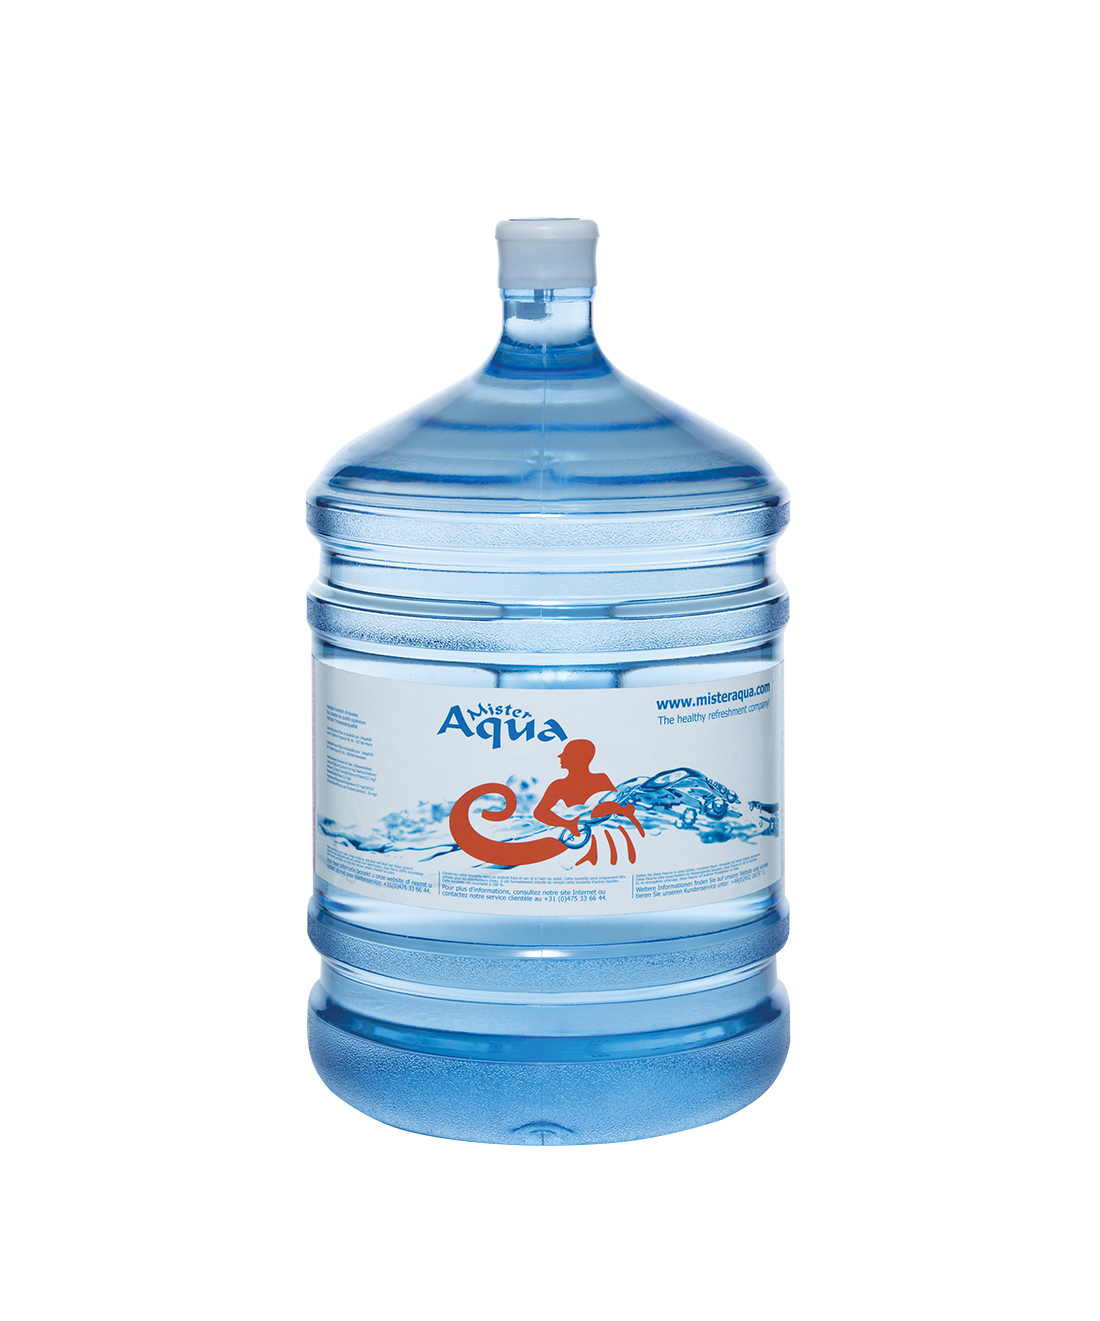 Cyberruimte geestelijke trechter Mister Aqua 18,9 liter drinkwater. Verfrissend en gezond